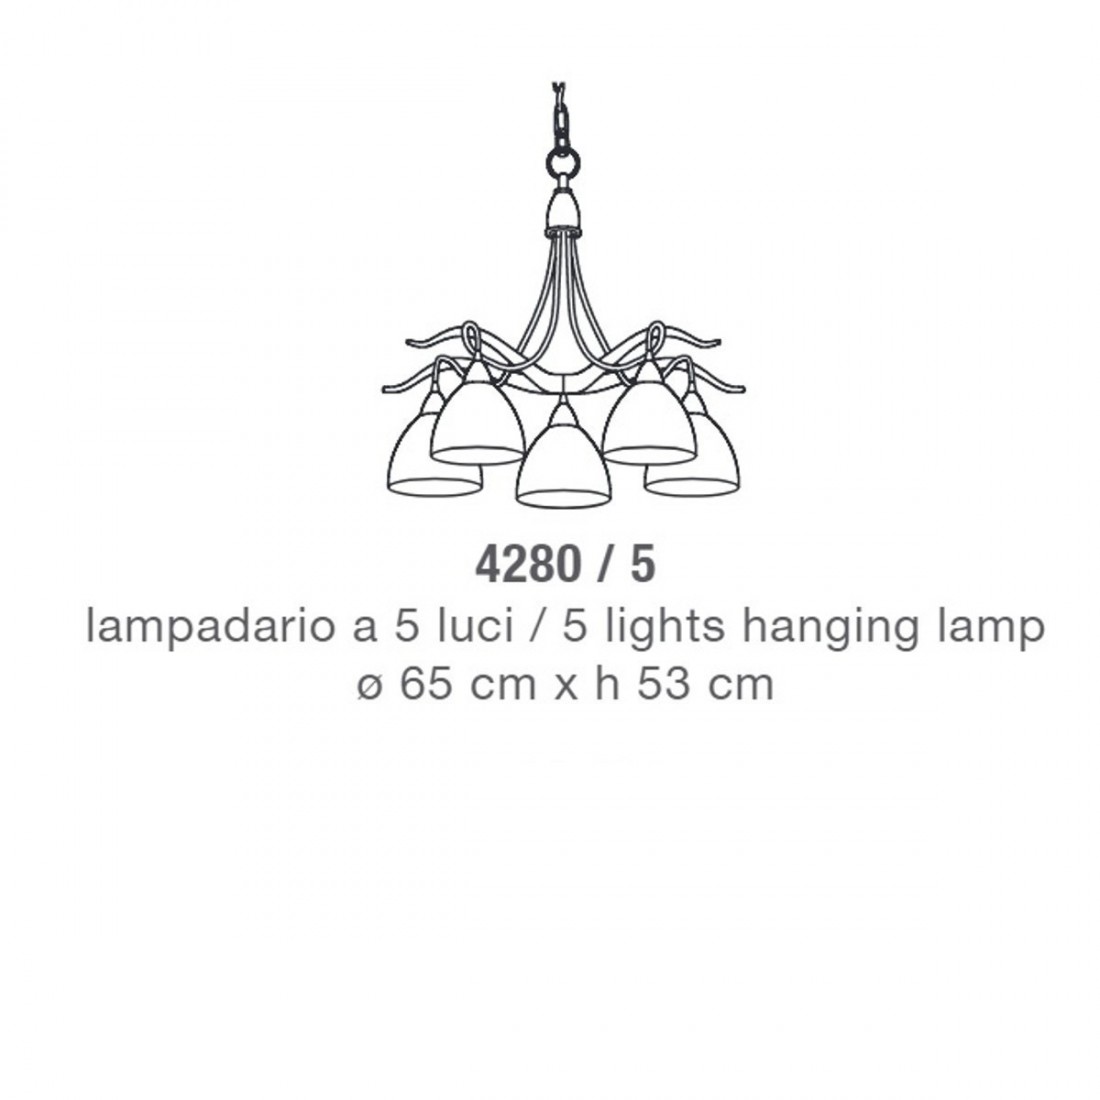 Lampadario 4280 5 Lam illuminazione